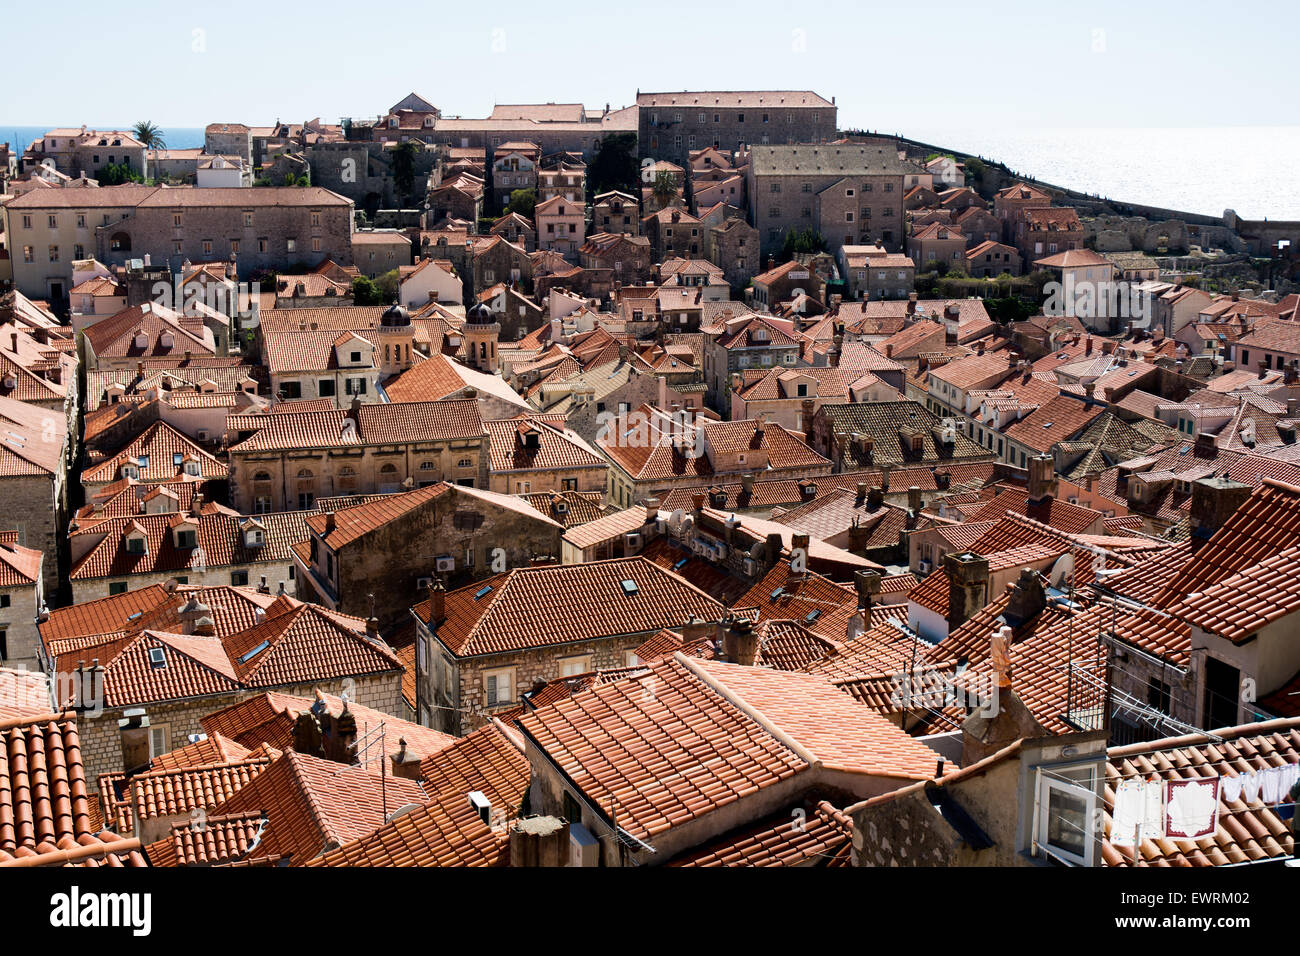 Scène sur le toit de terracota vieille ville, Dubrovnik, Croatie Banque D'Images